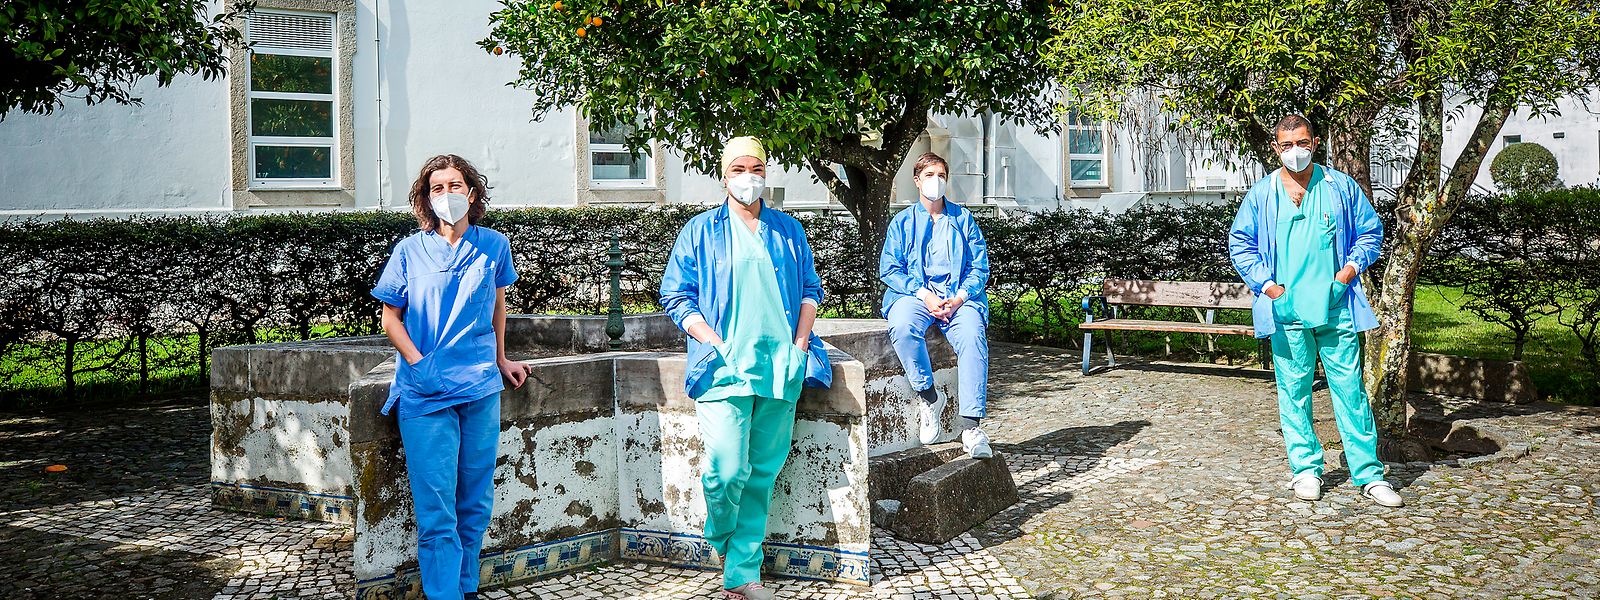 Reportagem com equipas medicas e de enfermagem que vieram do Luxemburgo para o Hospital de Evora, em Portugal. Estas equipas vieram dar apoio aos profissionais de saúde desta unidade hospitalar no combate a COVID-19

